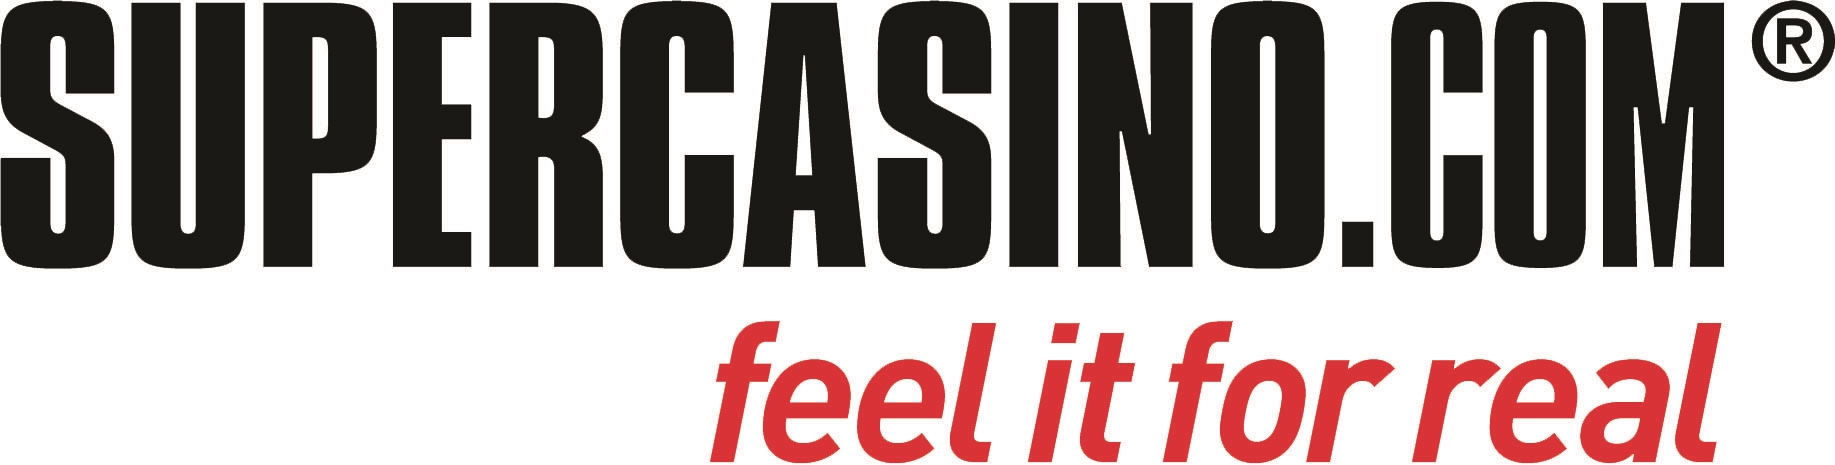 bwin casino